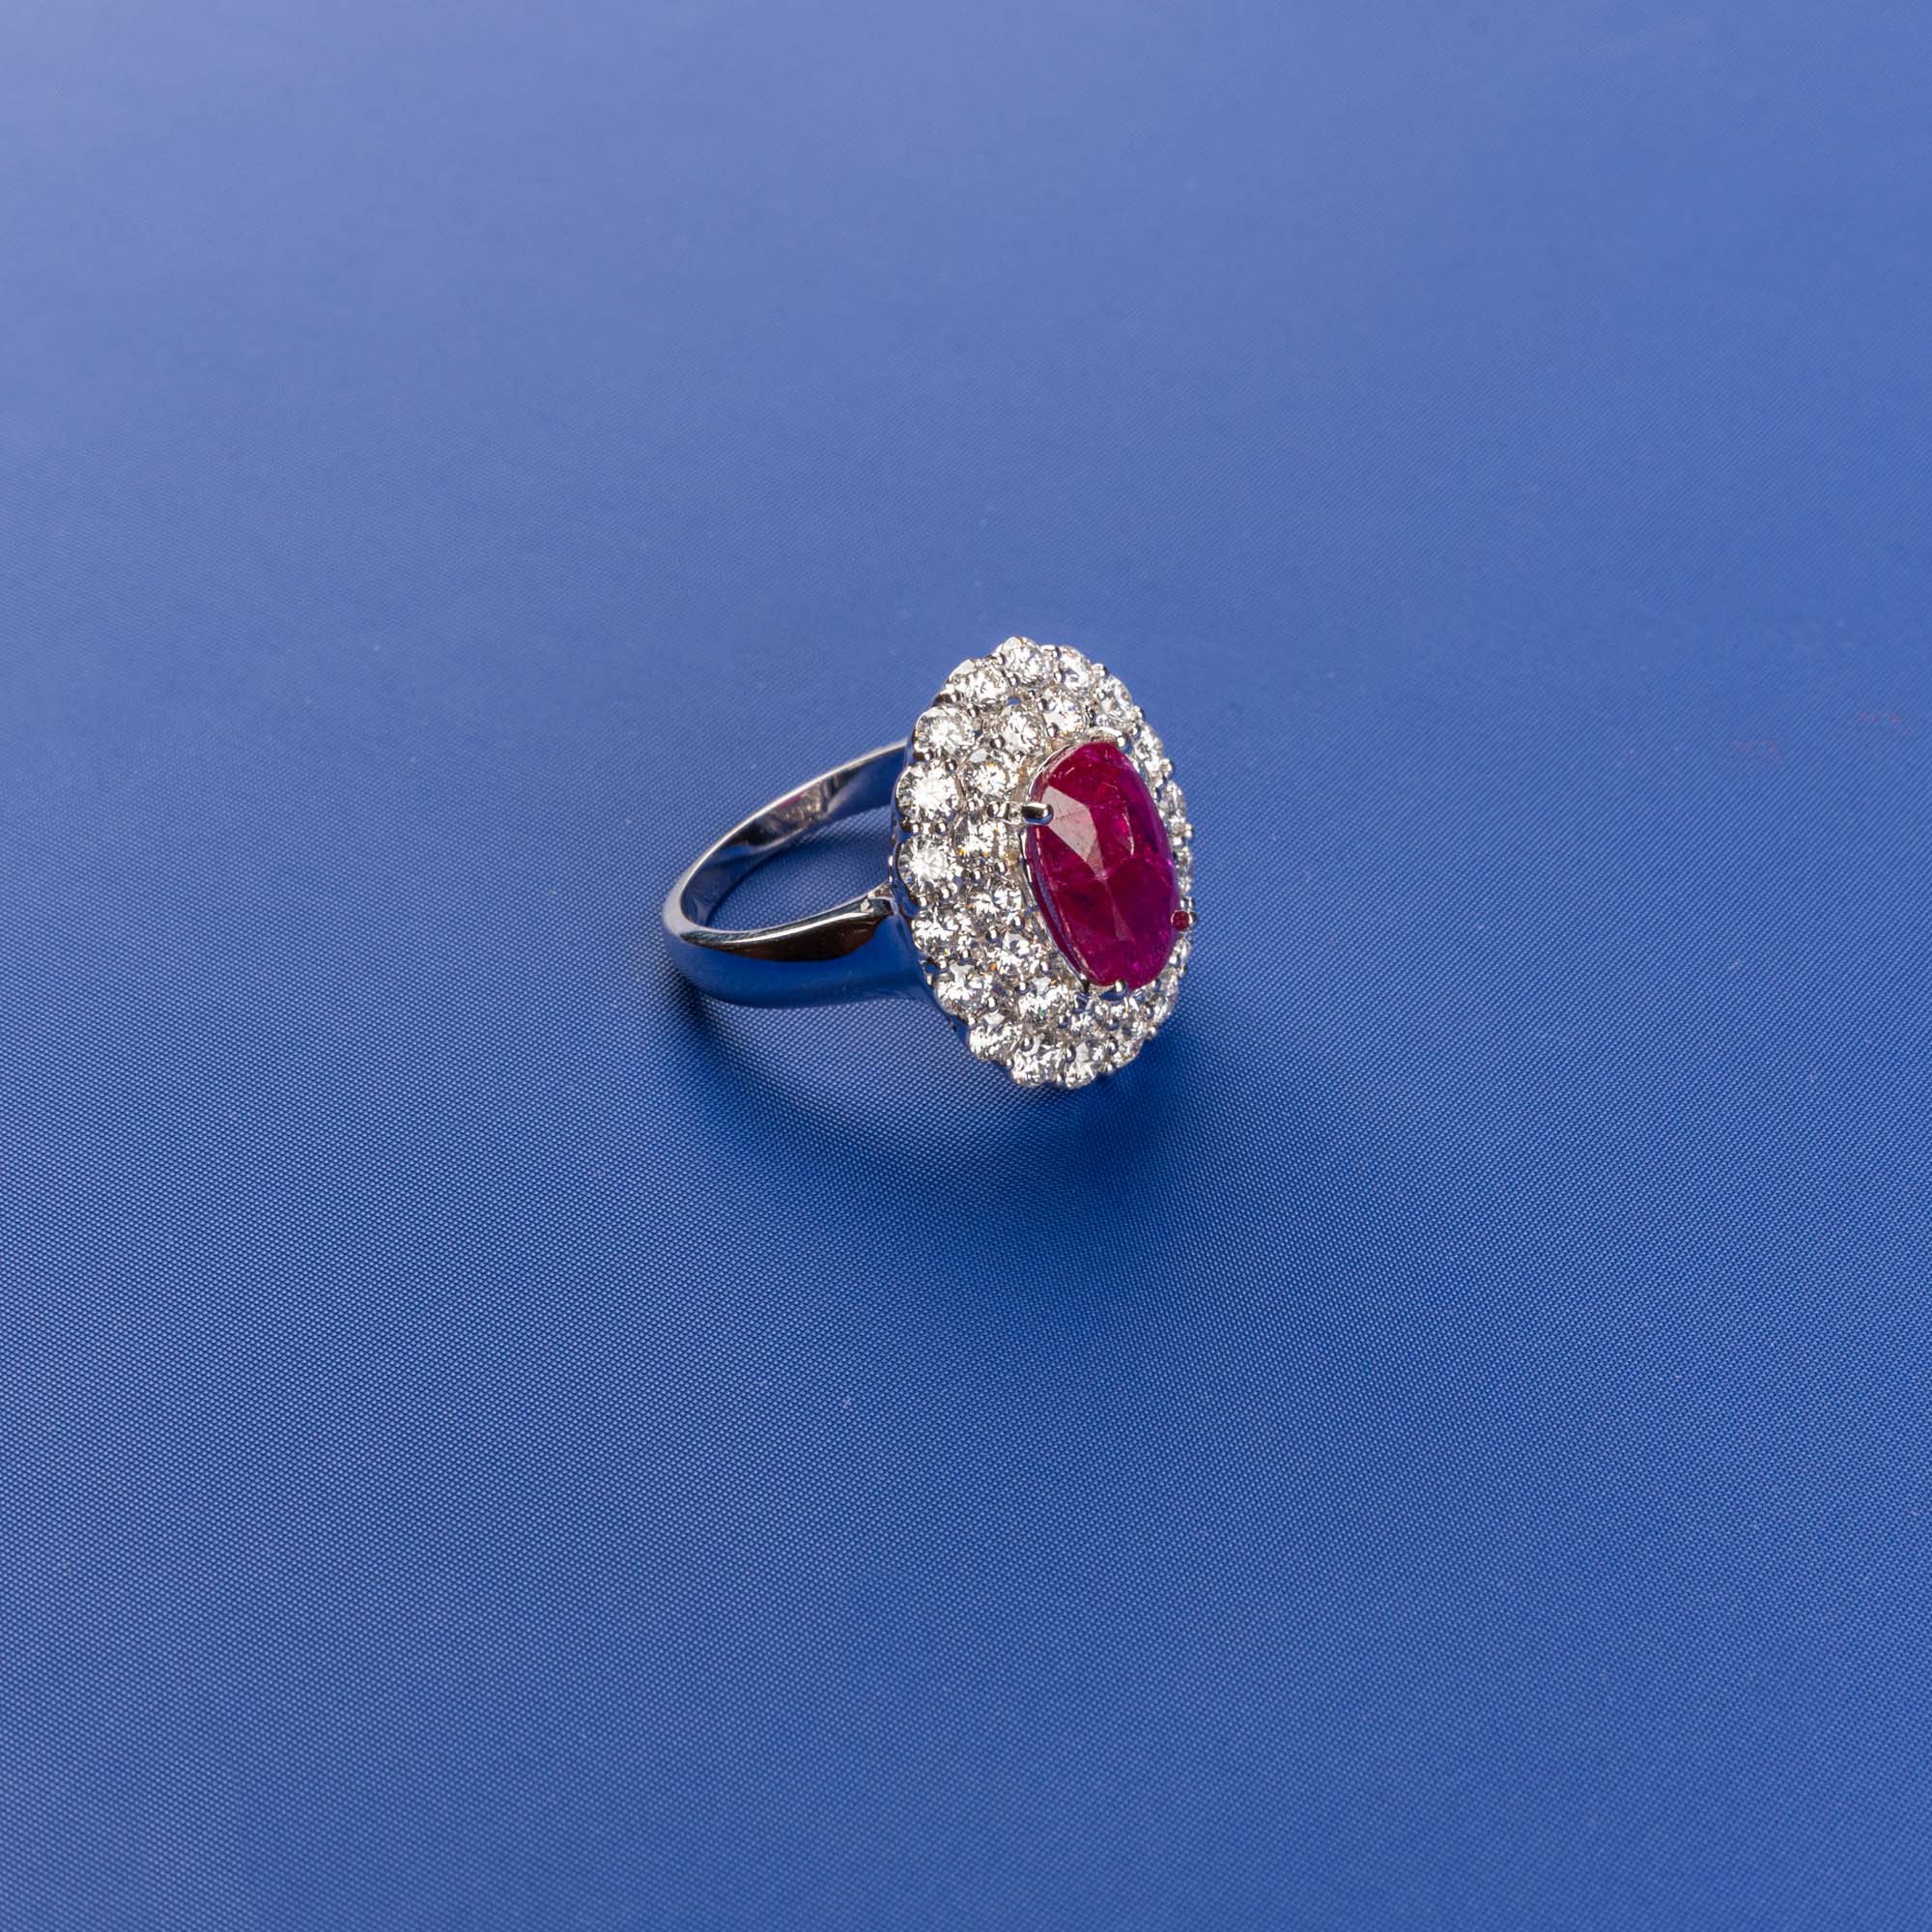 Ruby Splendor: Handmade 18K White Gold Diamond Ring with Ruby